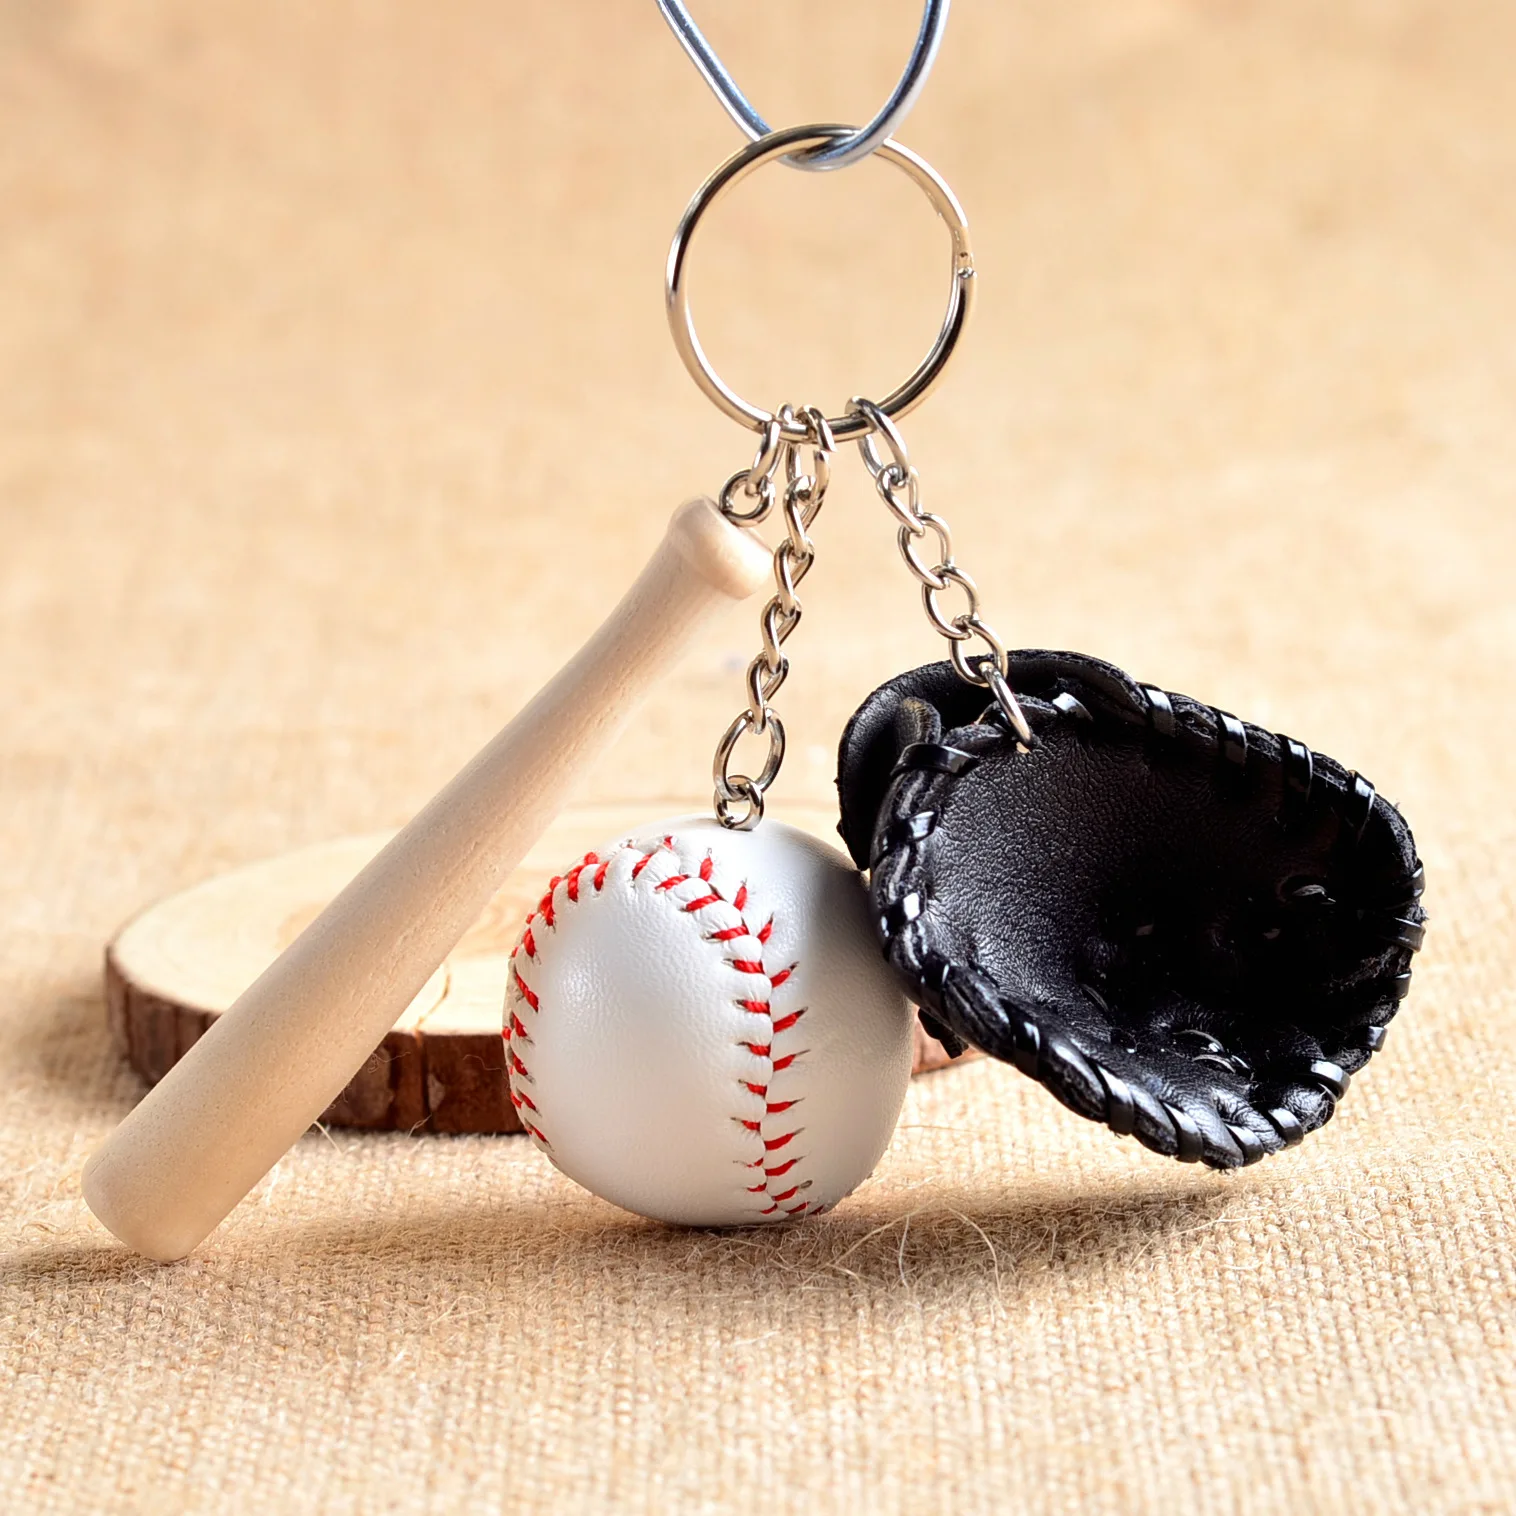 Новинка! Мини-бейсбольная перчатка из трех частей, деревянный брелок с битой спортивной машинкой, брелок для ключей, подарок для мужчин и женщин